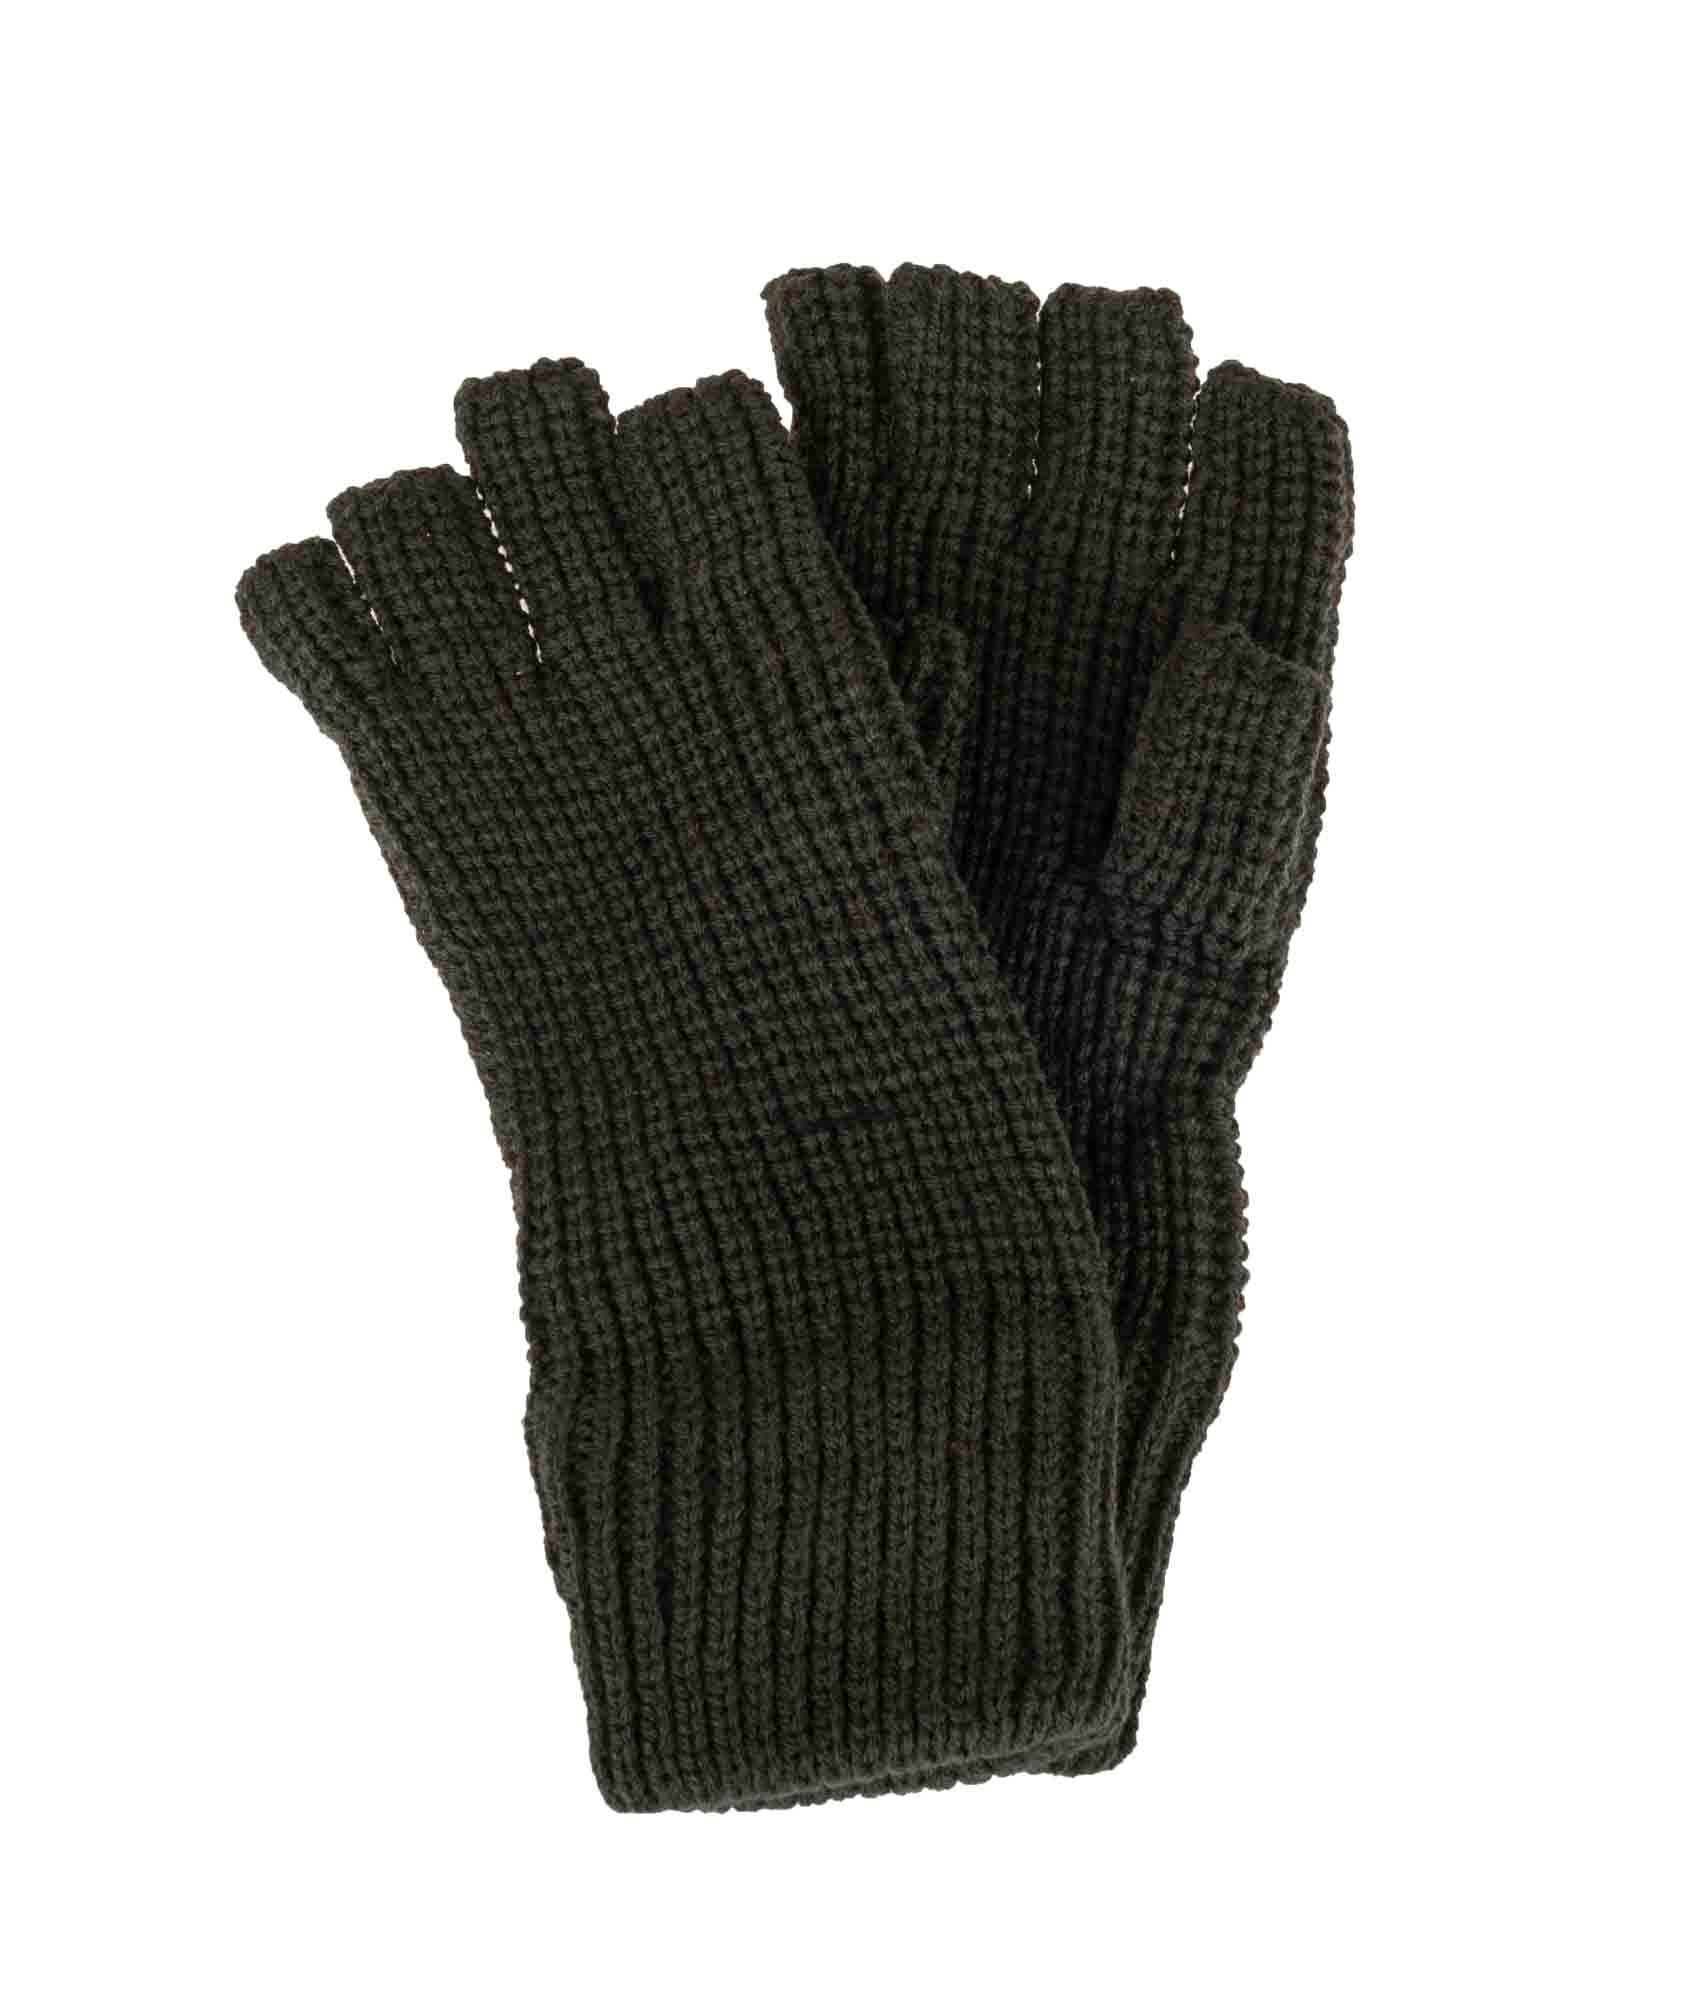 Køb Fingerløse handsker i strik online her 417.dk